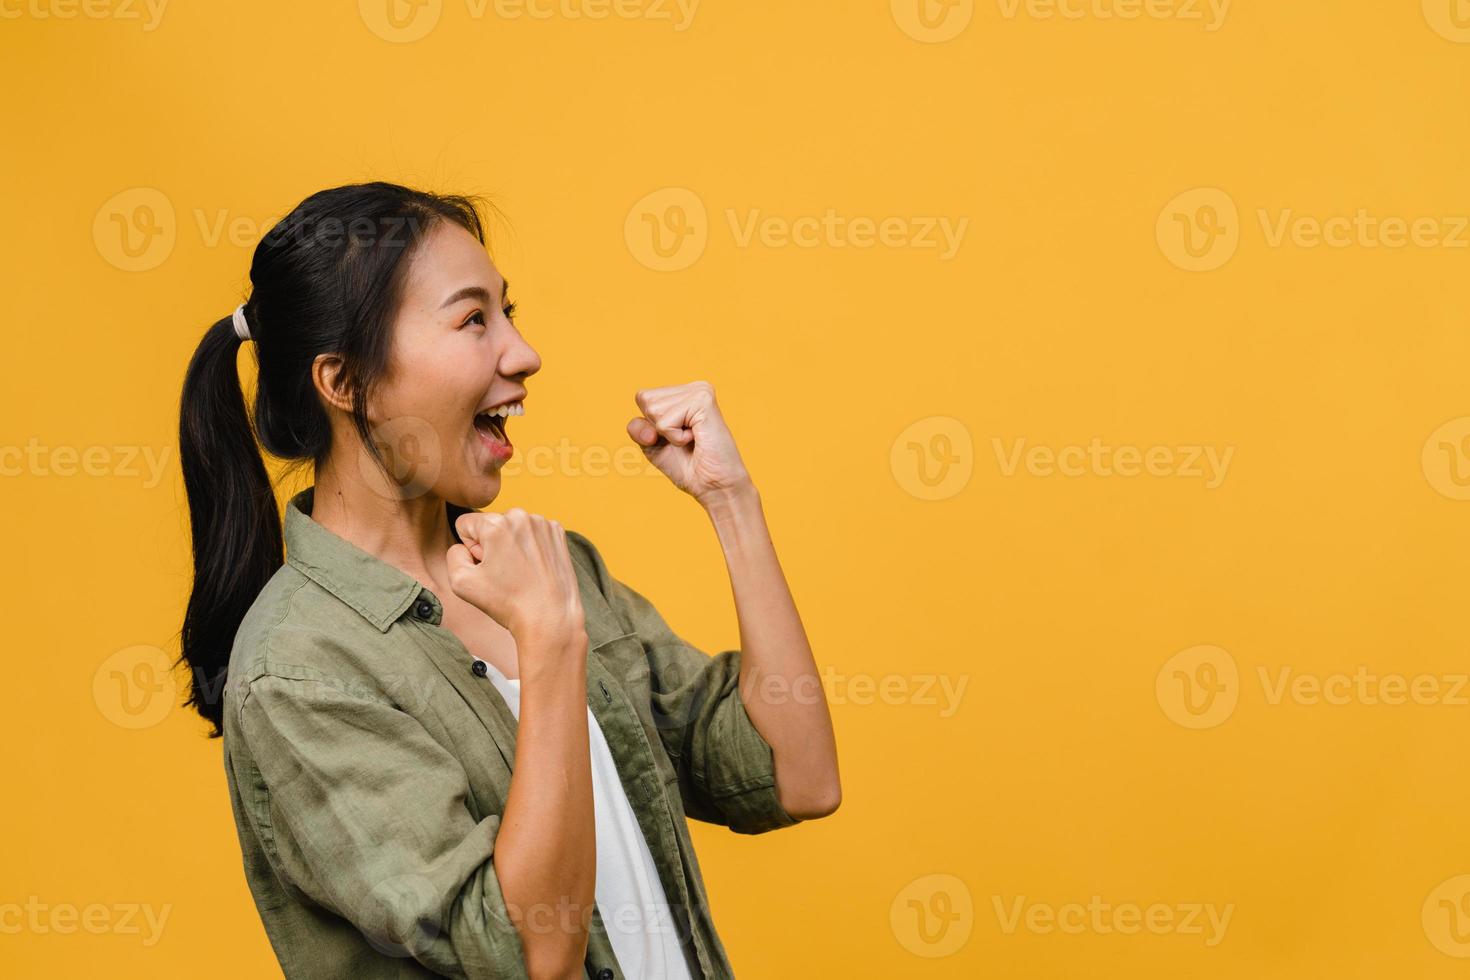 jonge aziatische dame met positieve uitdrukking, vrolijk en opwindend, gekleed in casual doek over gele achtergrond met lege ruimte. gelukkige schattige blije vrouw verheugt zich over succes. gezichtsuitdrukking concept. foto